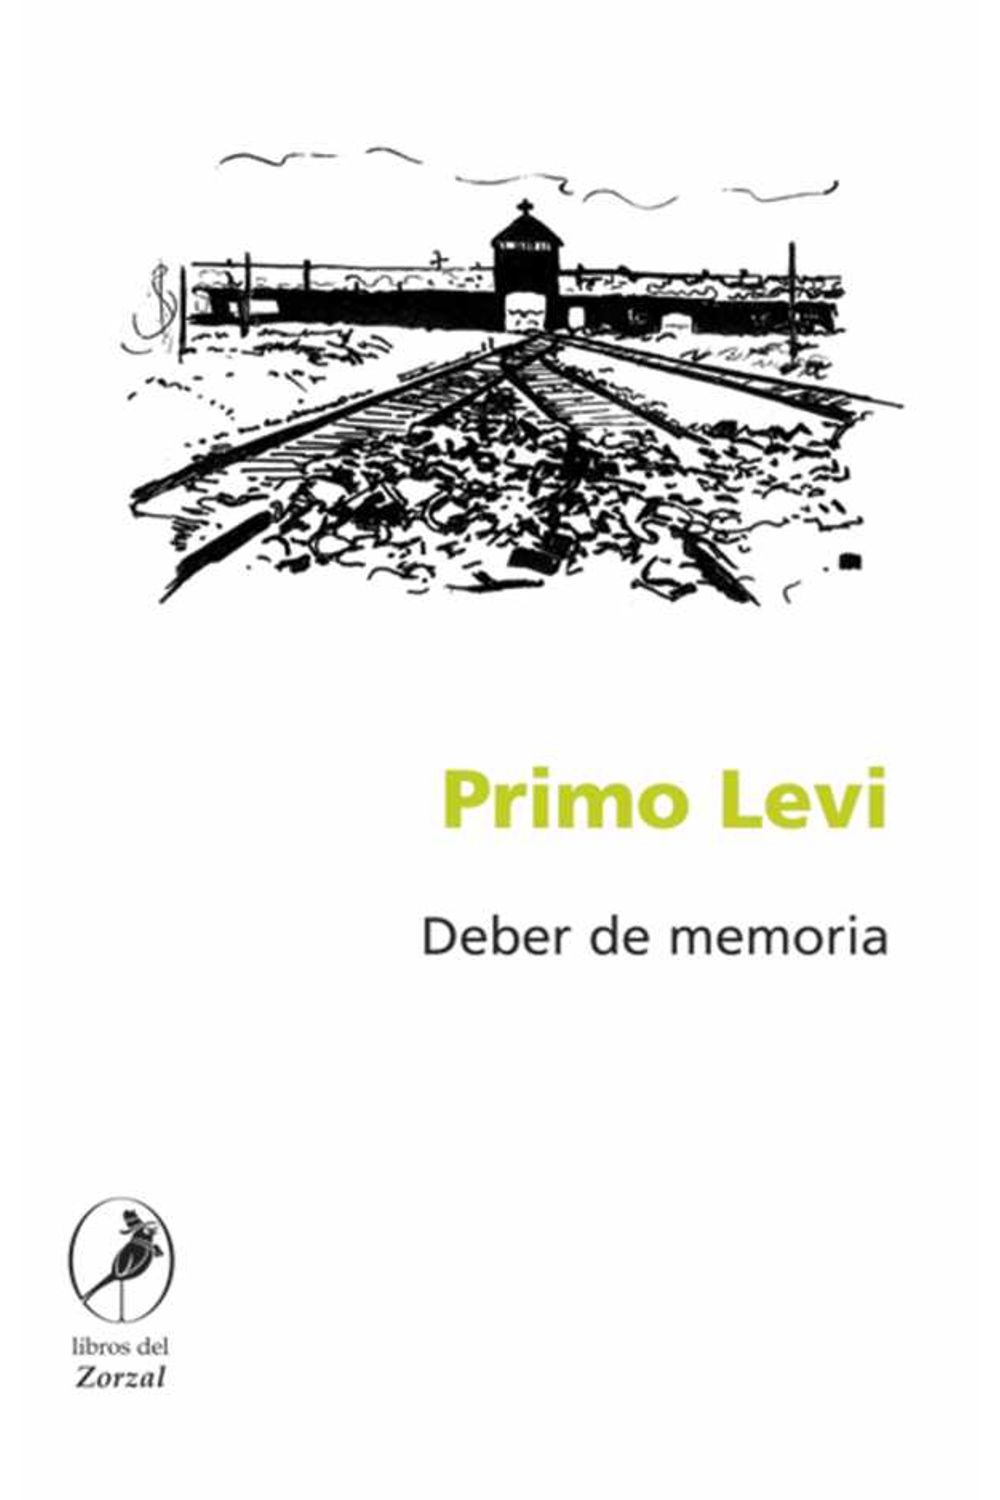 bw-deber-de-memoria-libros-del-zorzal-9789875995079